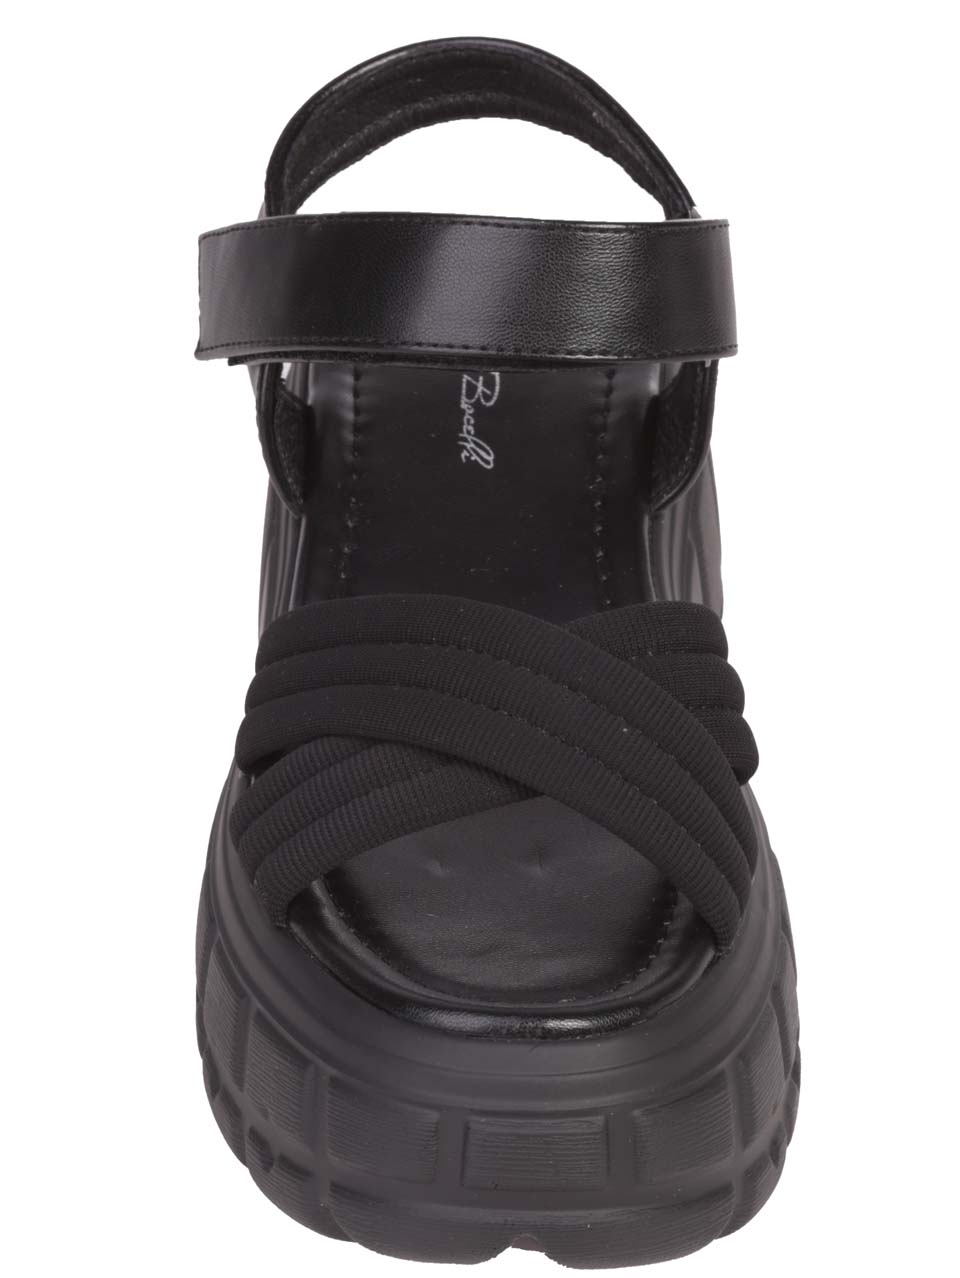 Ежедневни дамски сандали на платформа в черно 4H-24203 black